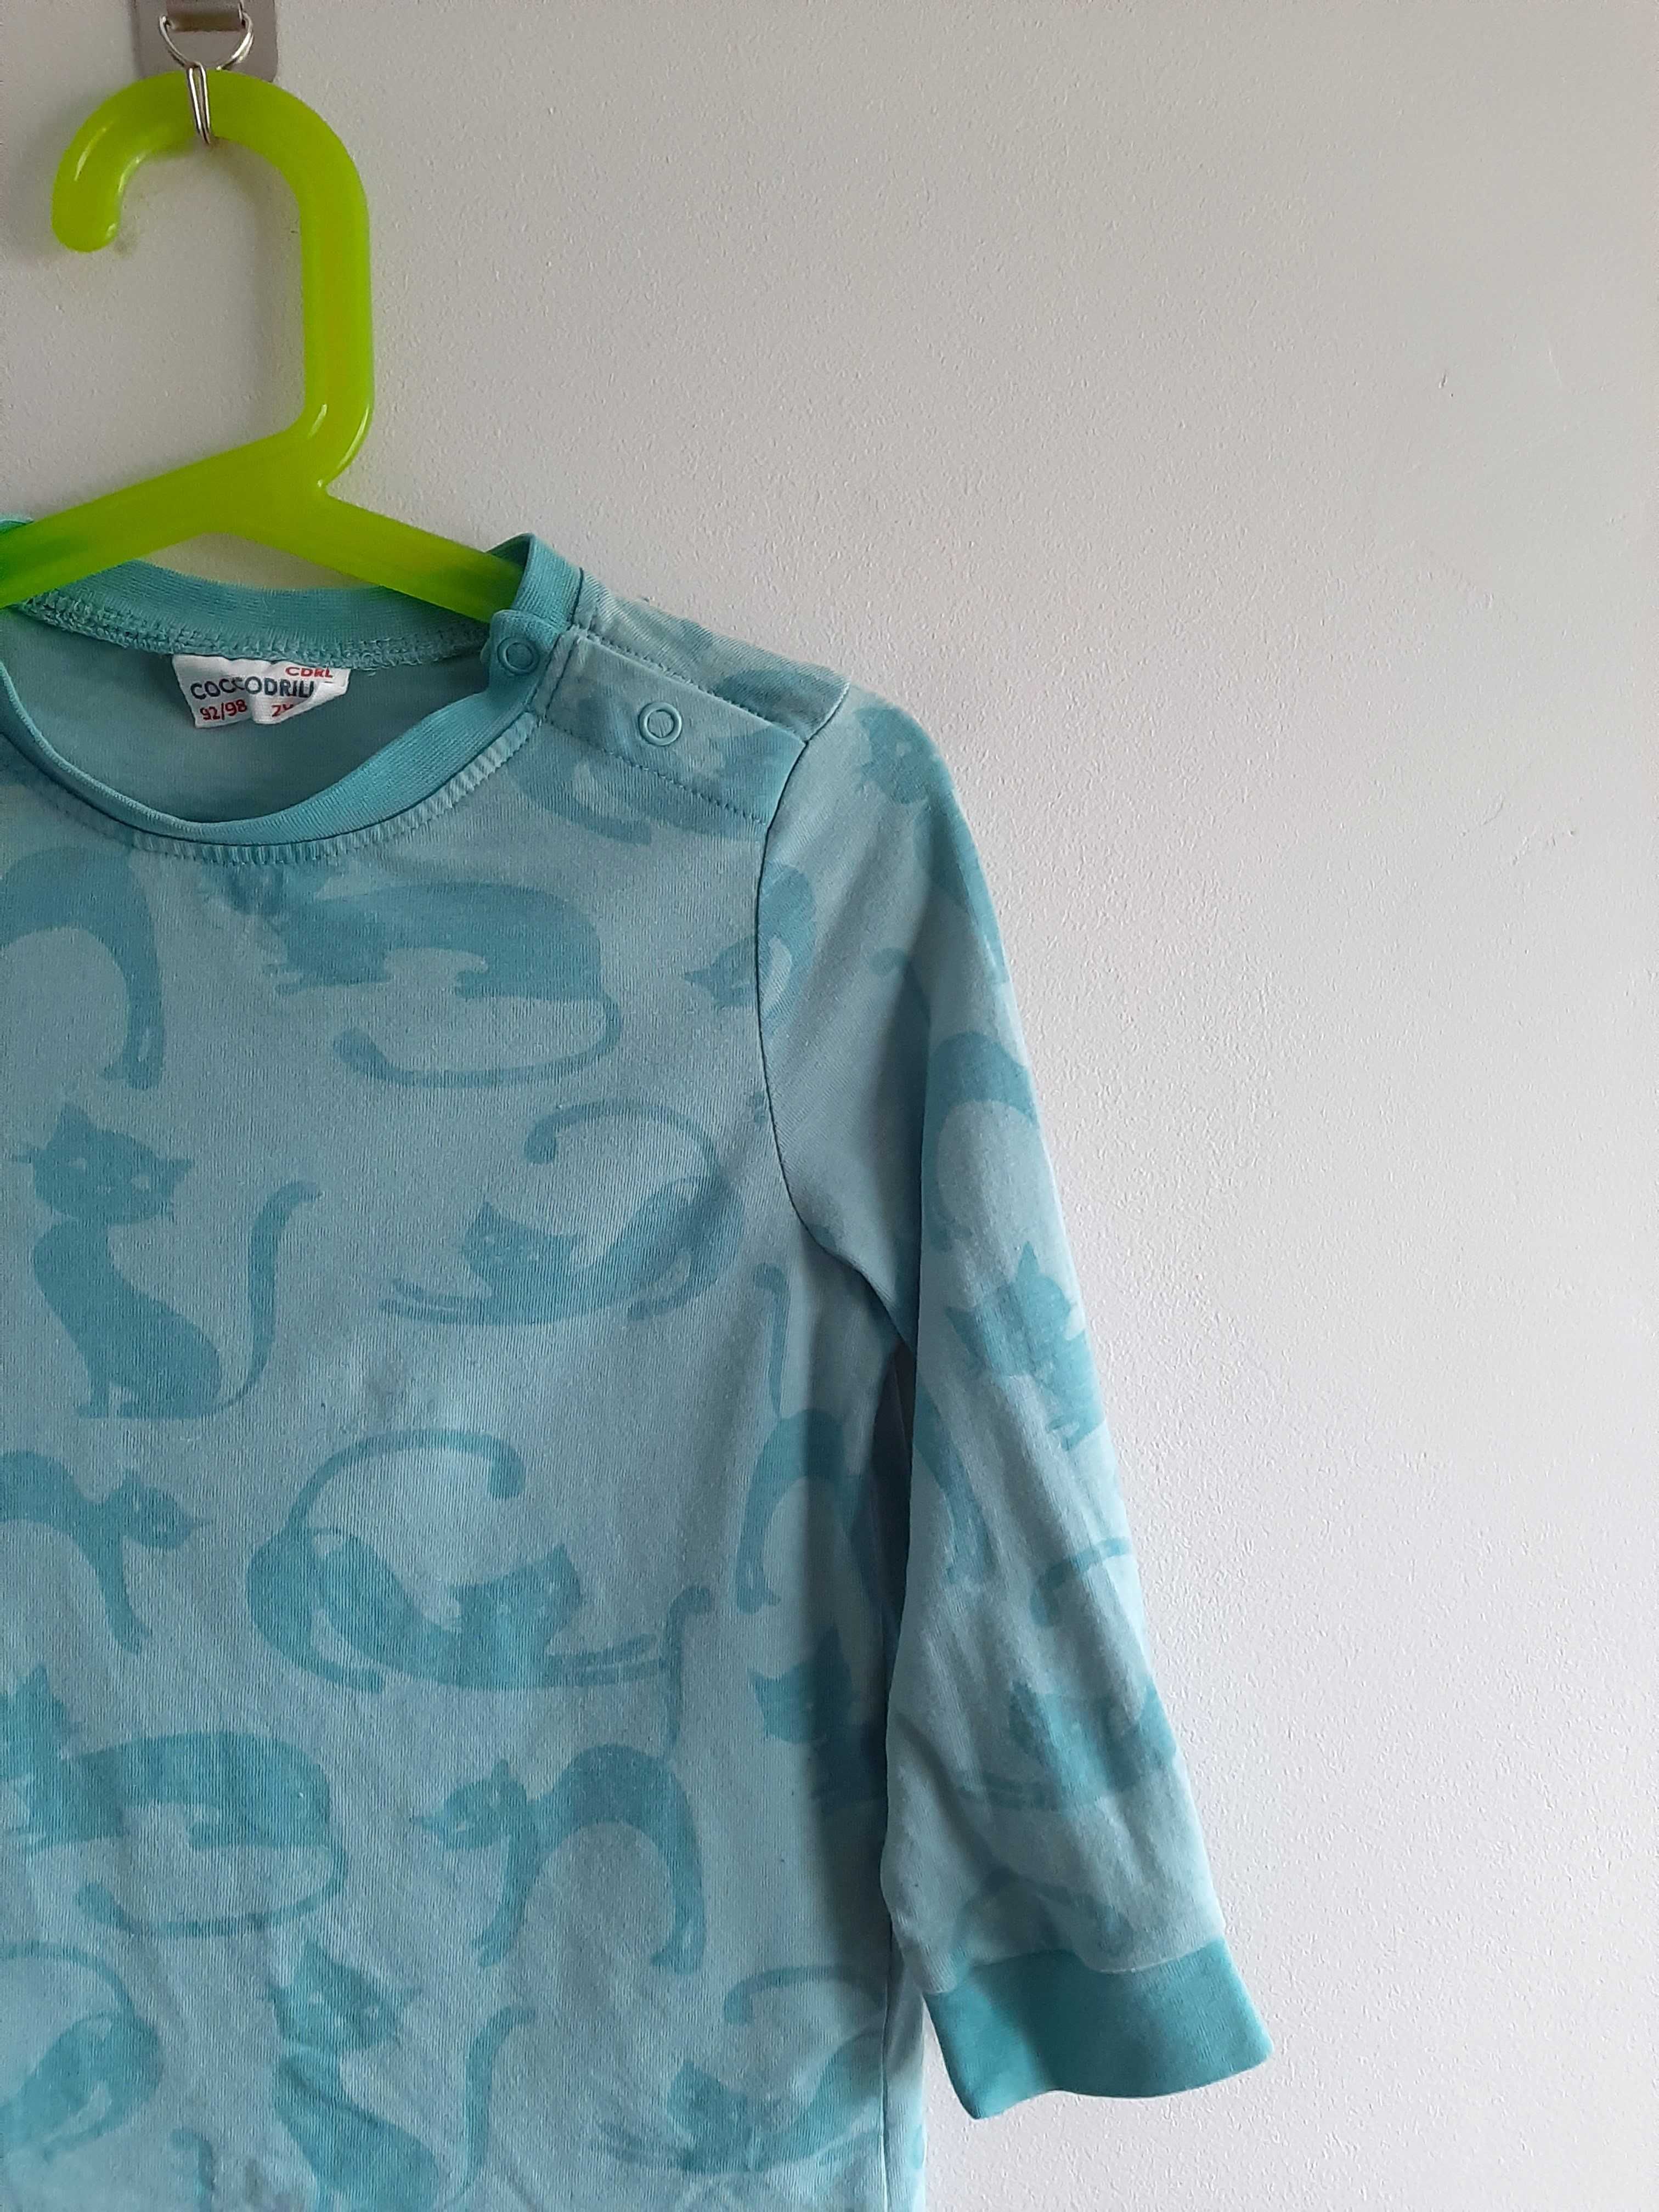 Dziecięca piżama w koty niebieska 98